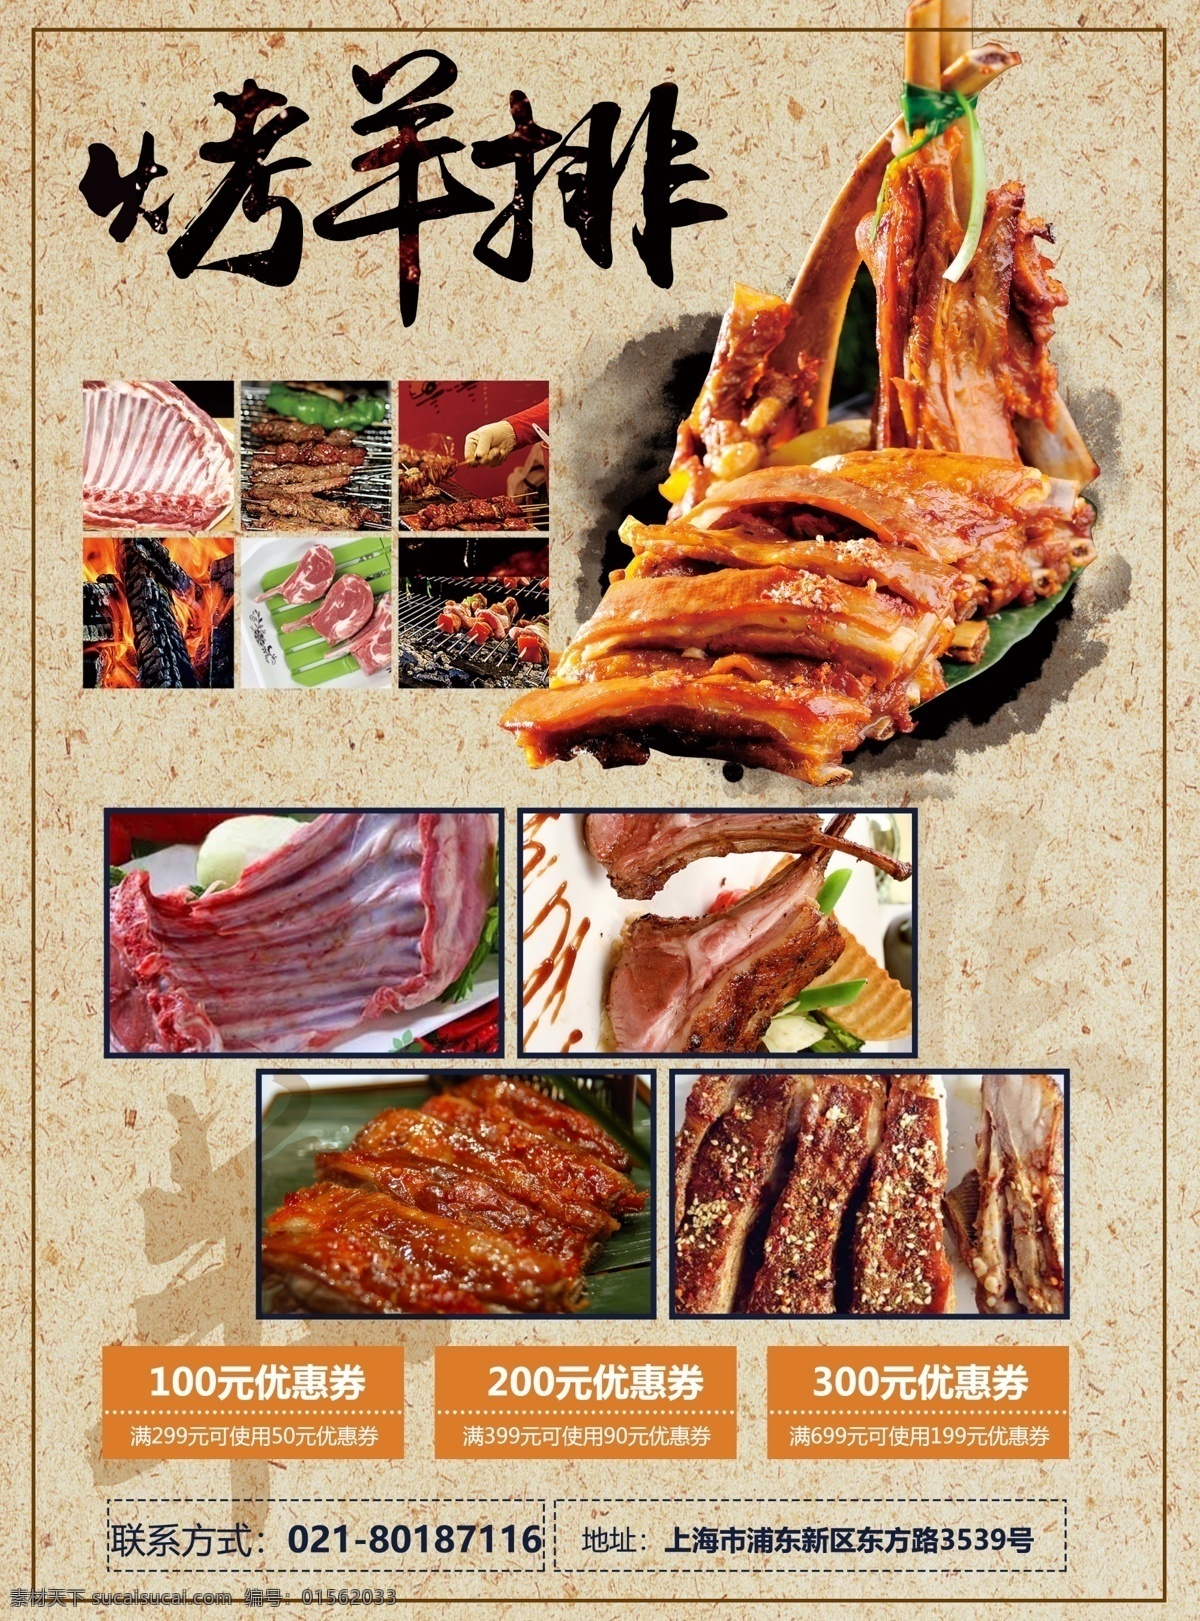 羊排 海报 招贴 菜单 烧烤 肉 菜品 菜牌 活动 烤肉